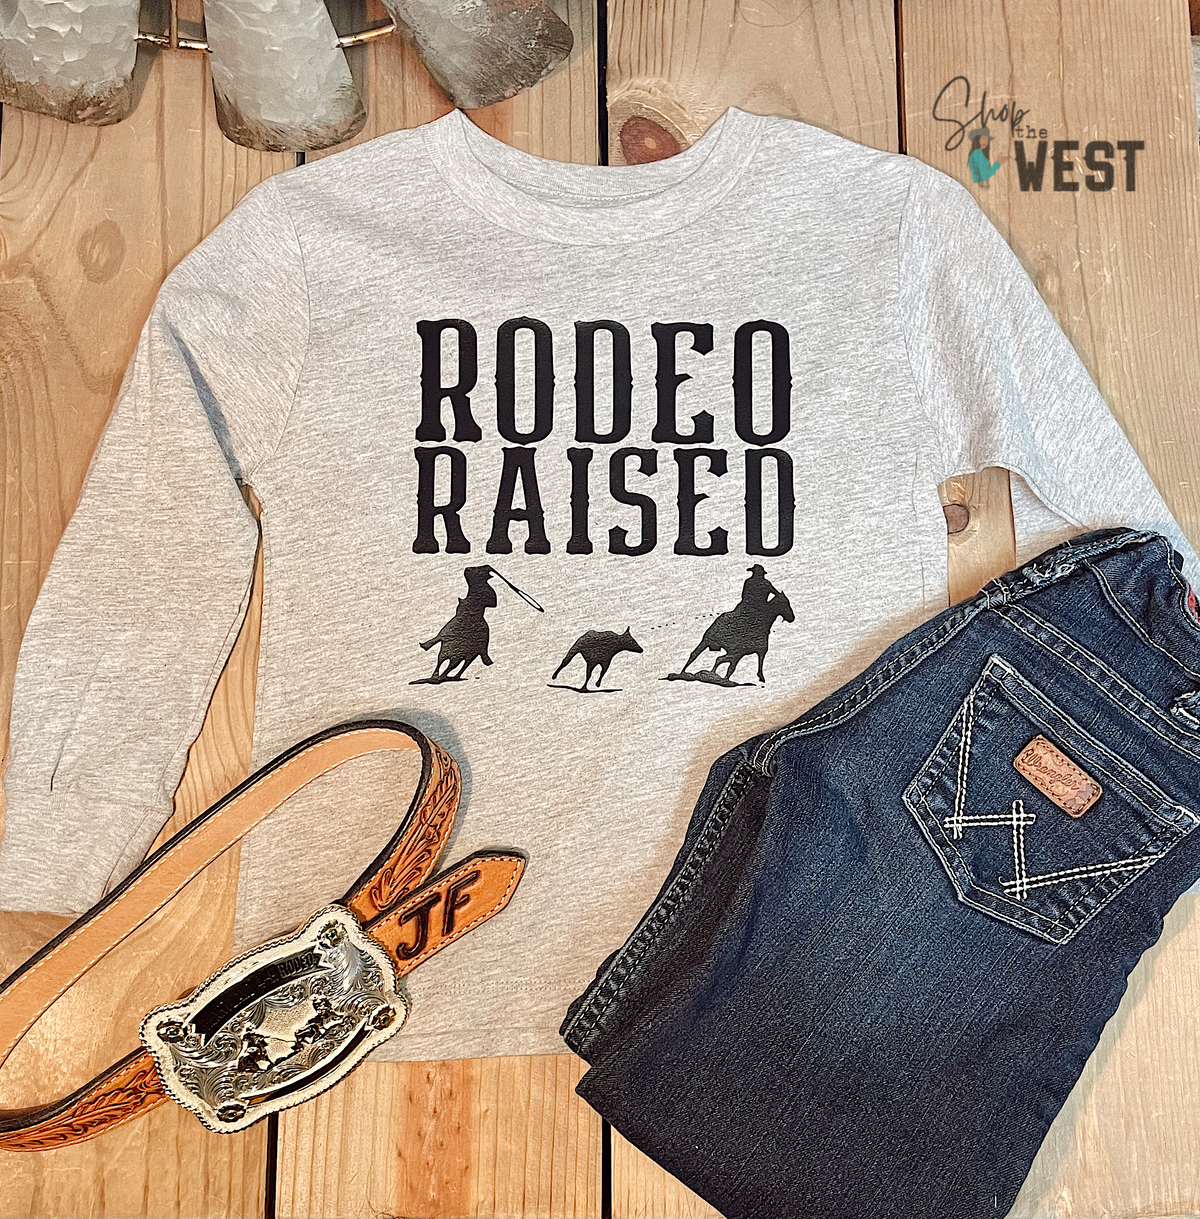 Rodeo Raised Team Roper